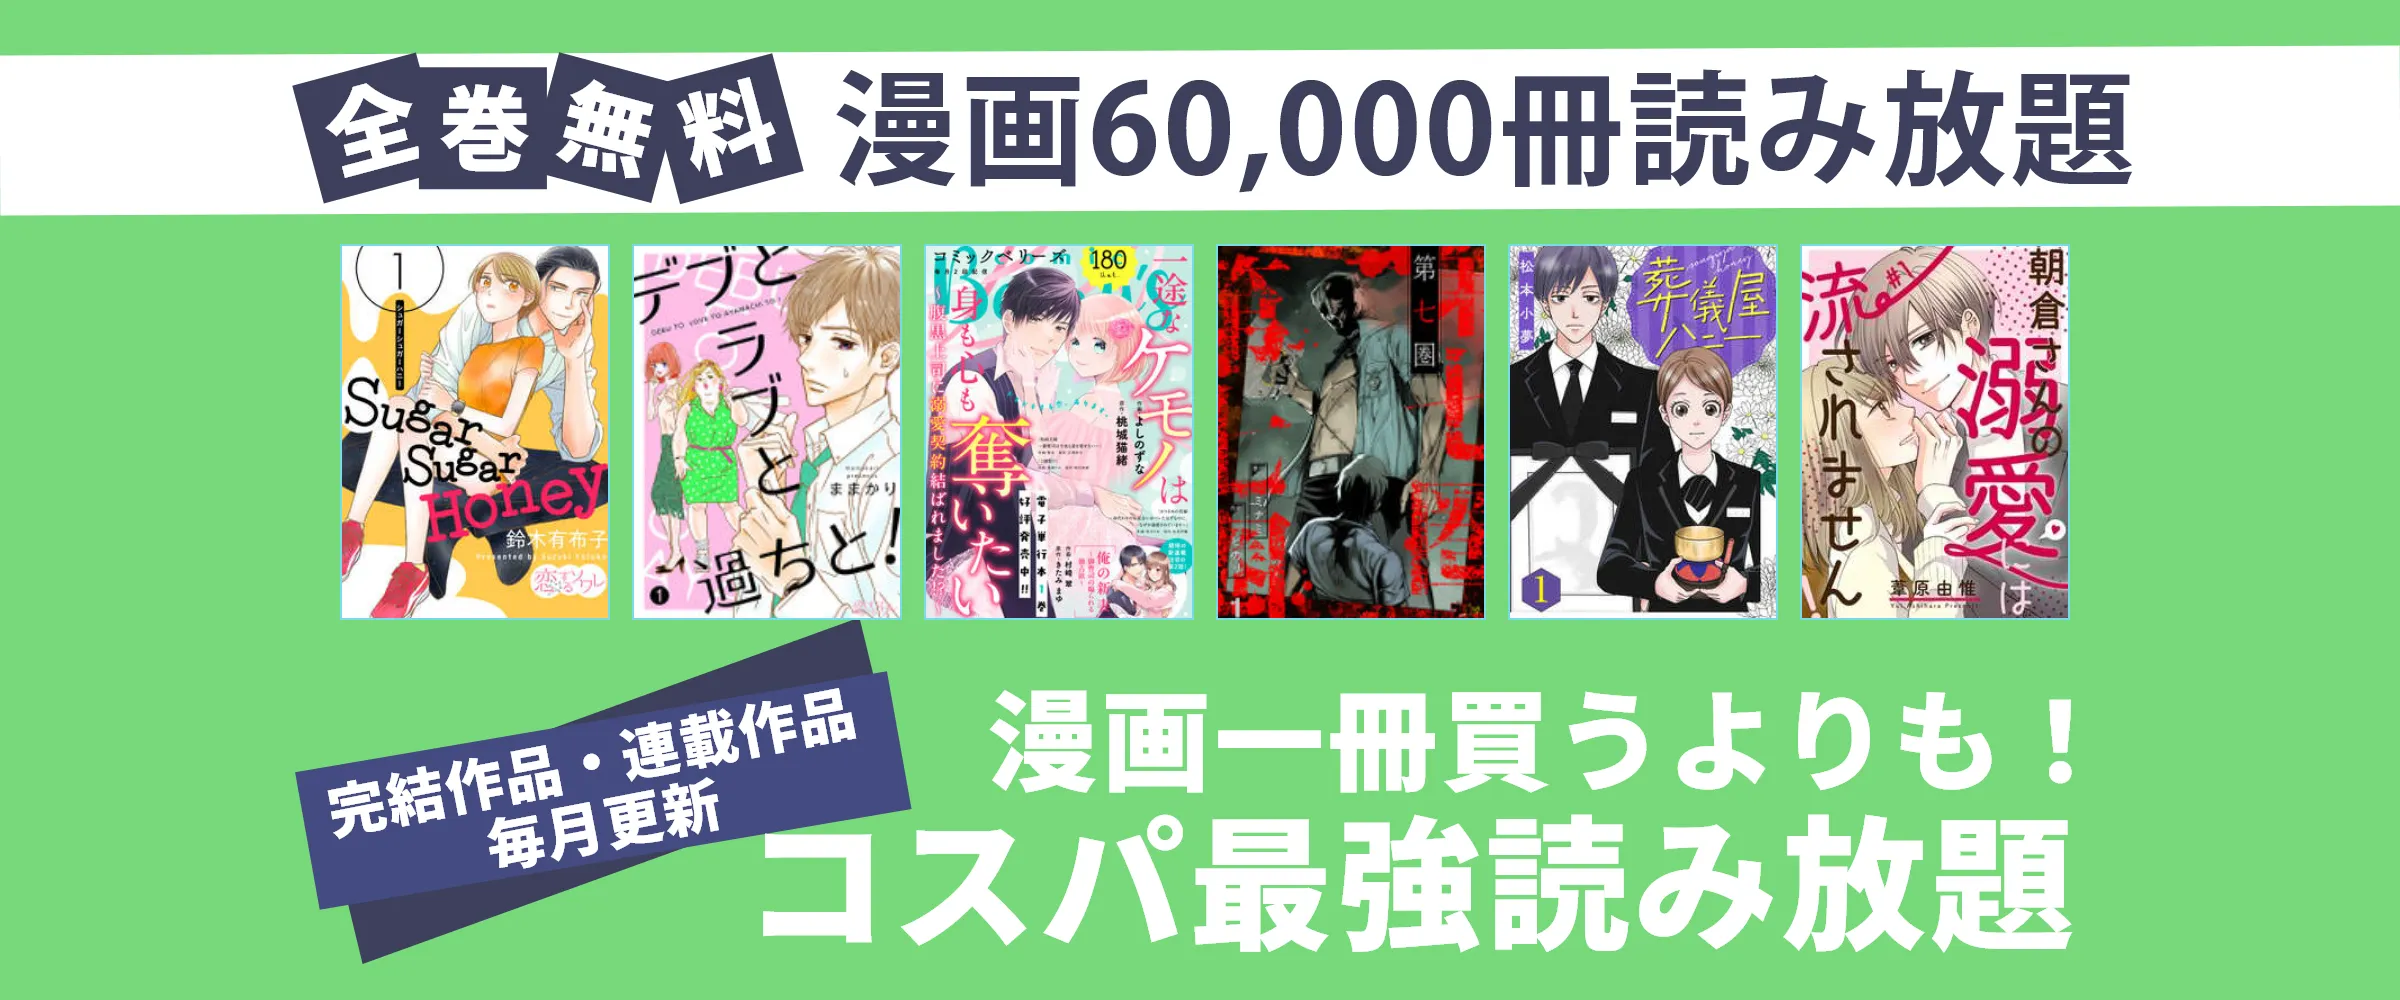 たった550円で漫画60,000冊 漫画雑誌100誌以上読み放題。最初の1ヵ月無料。